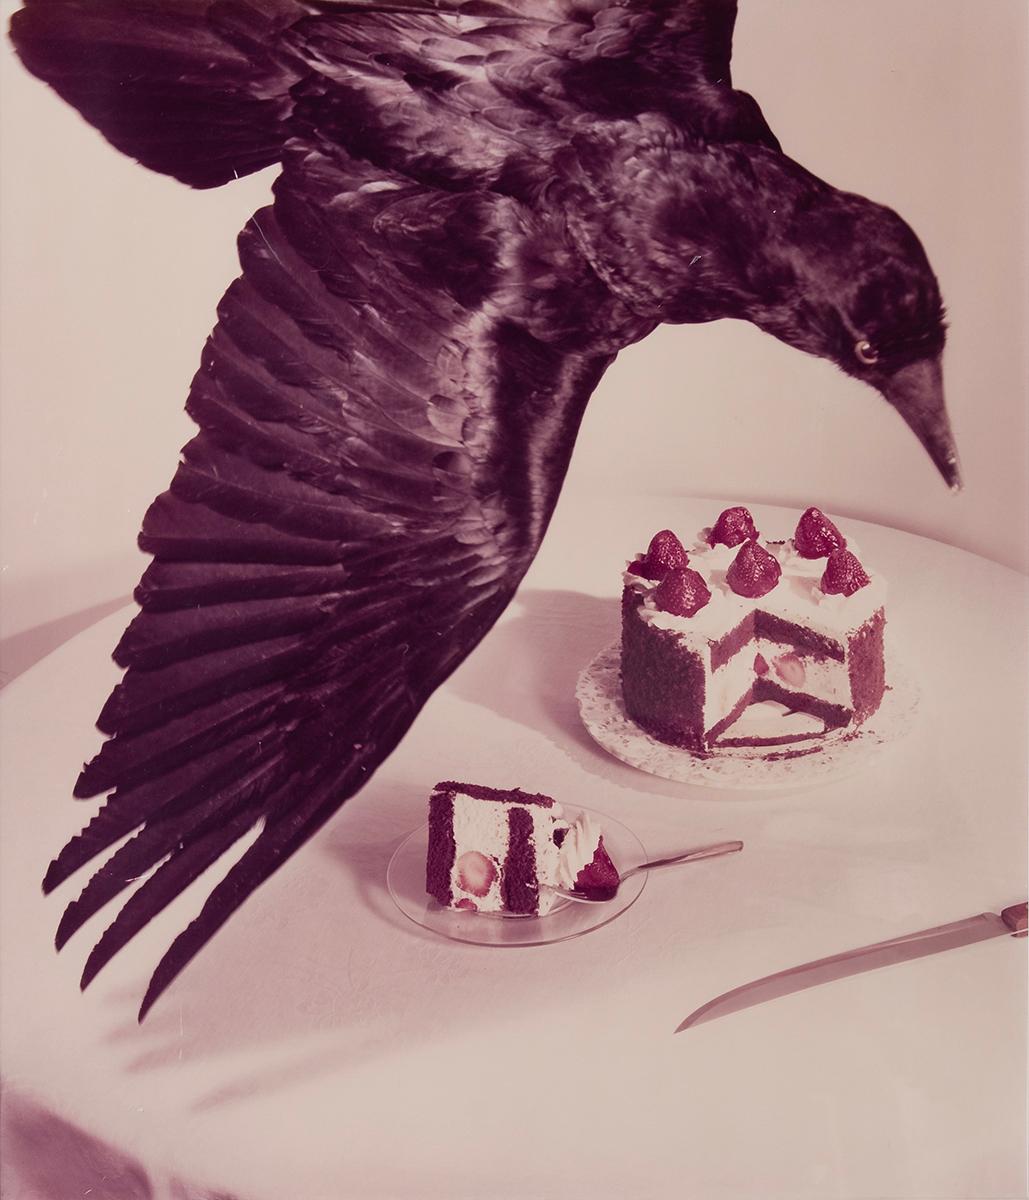 Untitled #106 von Jo Ann Callis zeigt einen schwarzen Vogel, der über einem Tisch mit einer geschichteten Erdbeertorte schwebt. Der Rabe fliegt über den gedeckten Tisch, wobei sein Flügel die Mitte des Bildes schneidet. Der Vogel scheint nach unten